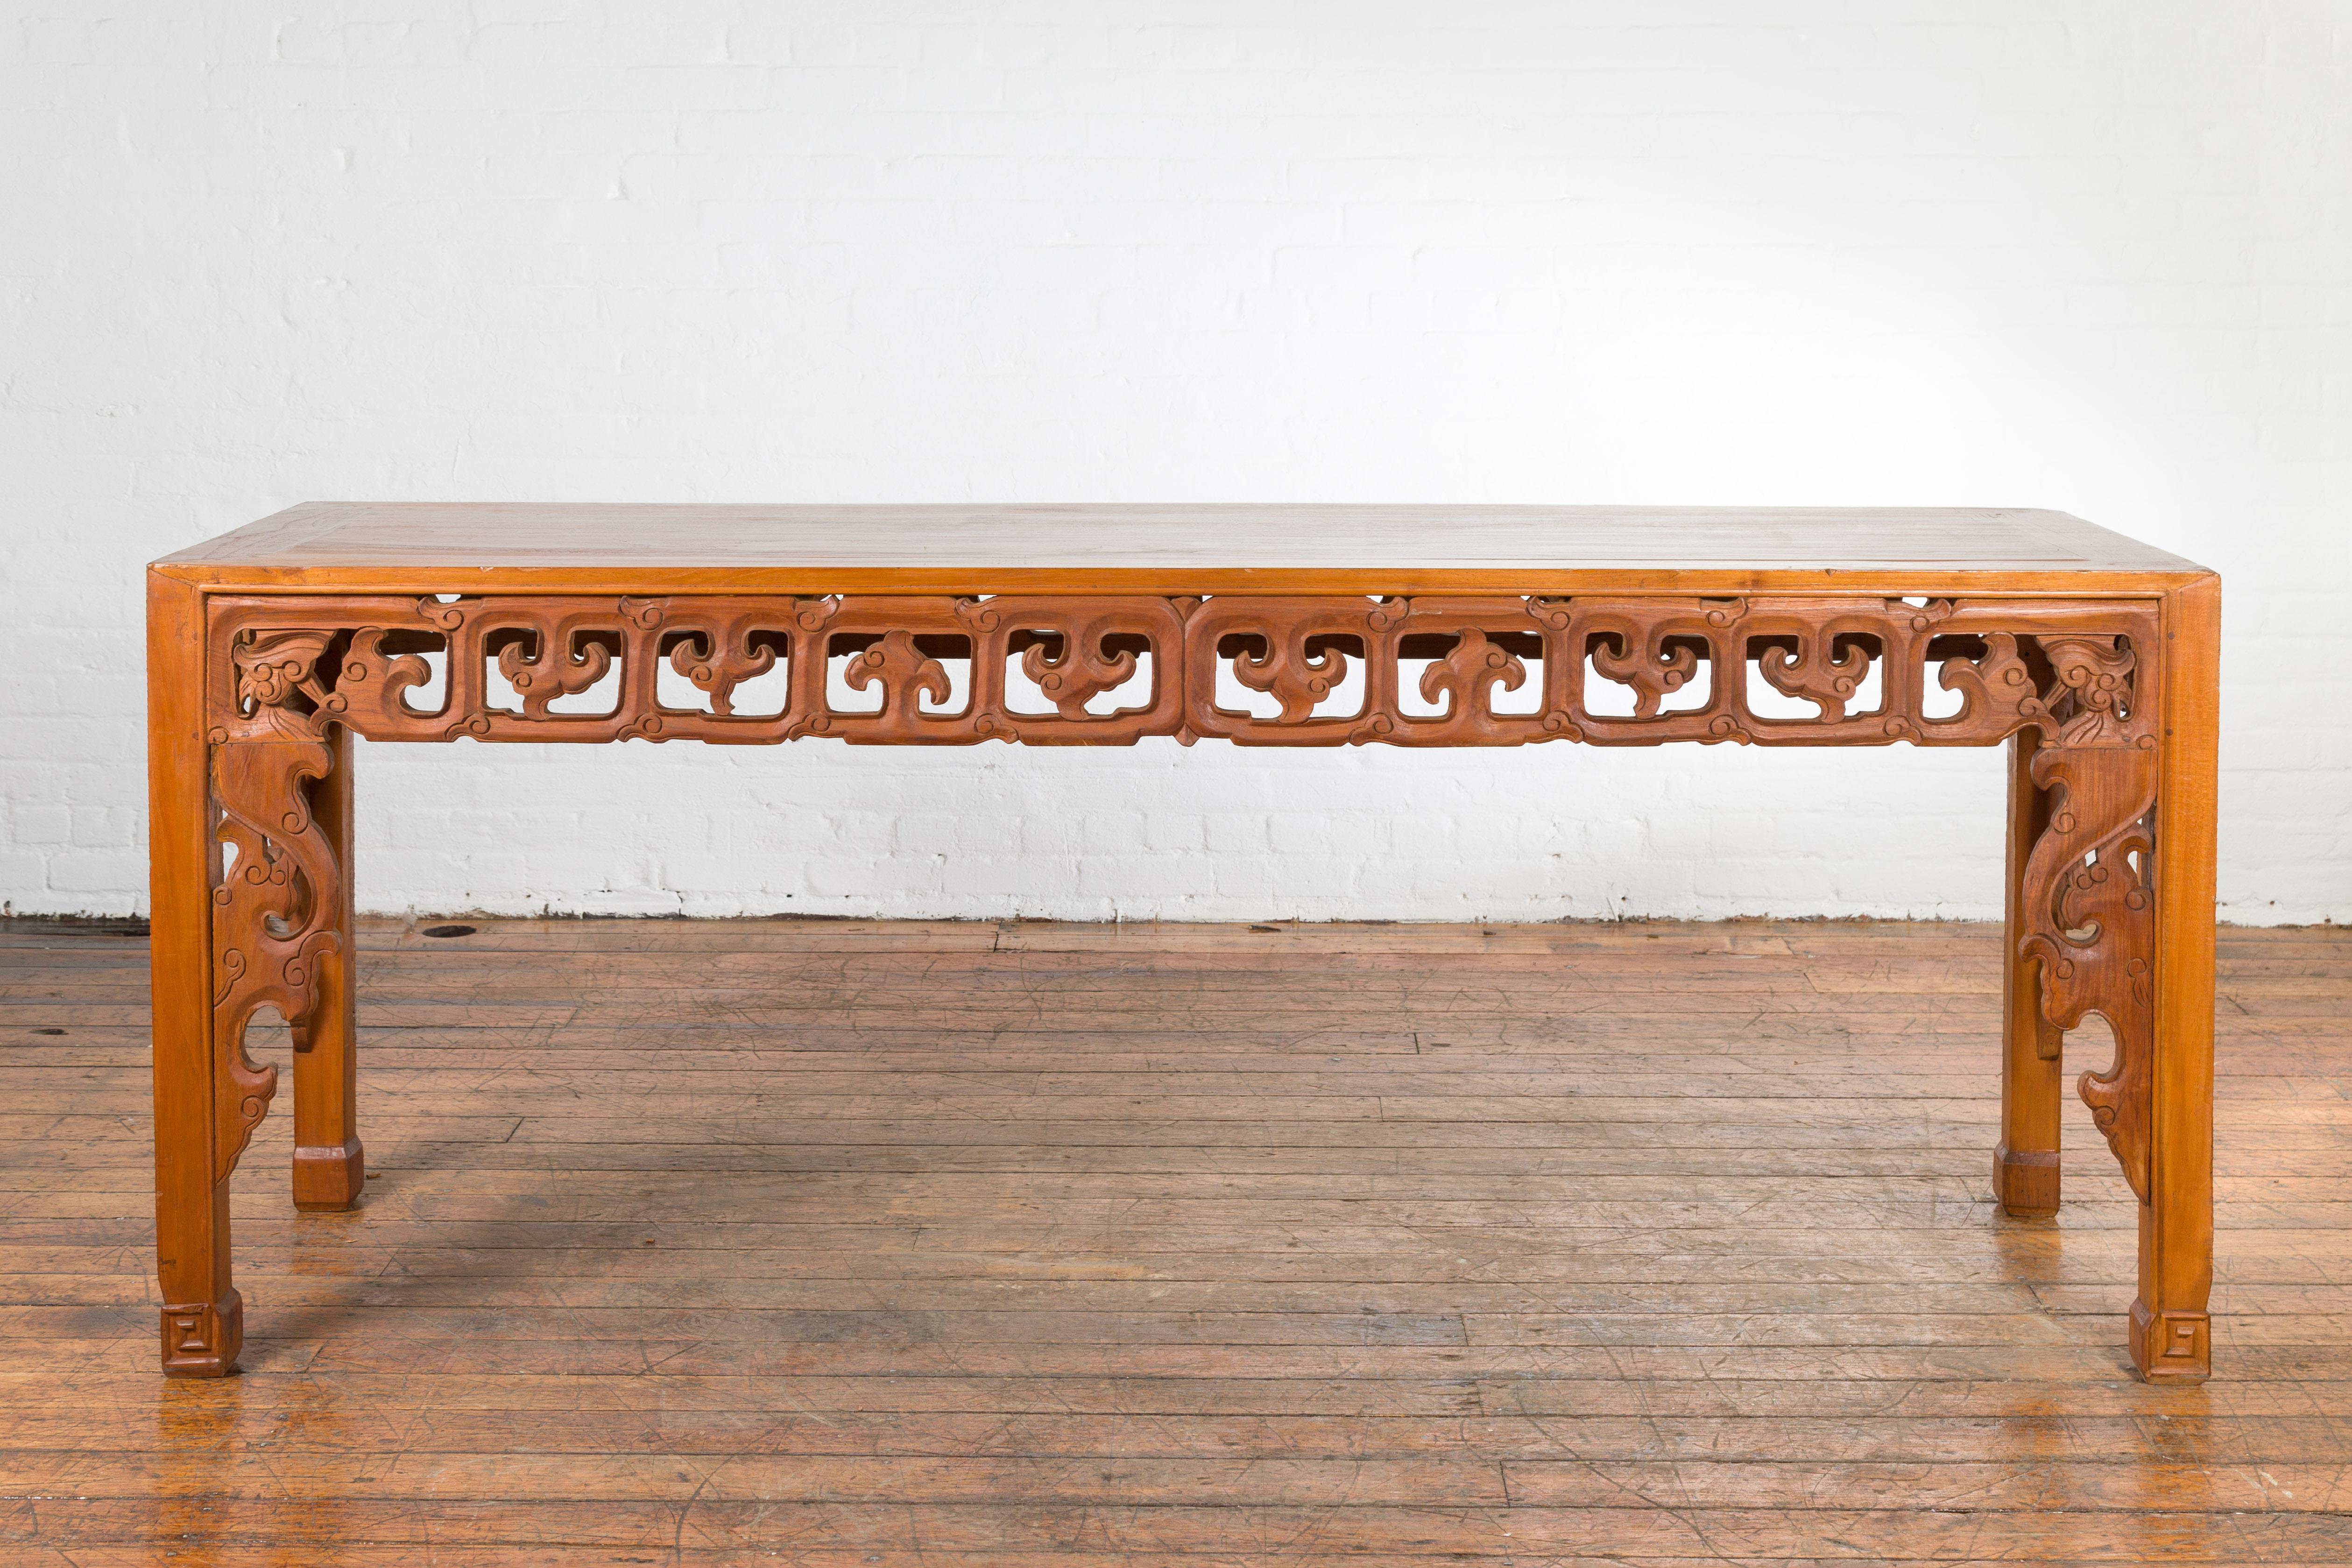 Table d'autel vintage en bois de teck de style indonésien chinois du milieu du 20e siècle avec des motifs sculptés. Trouvée à Madura, en Indonésie, cette table console présente un plateau rectangulaire avec une planche centrale, au-dessus d'un